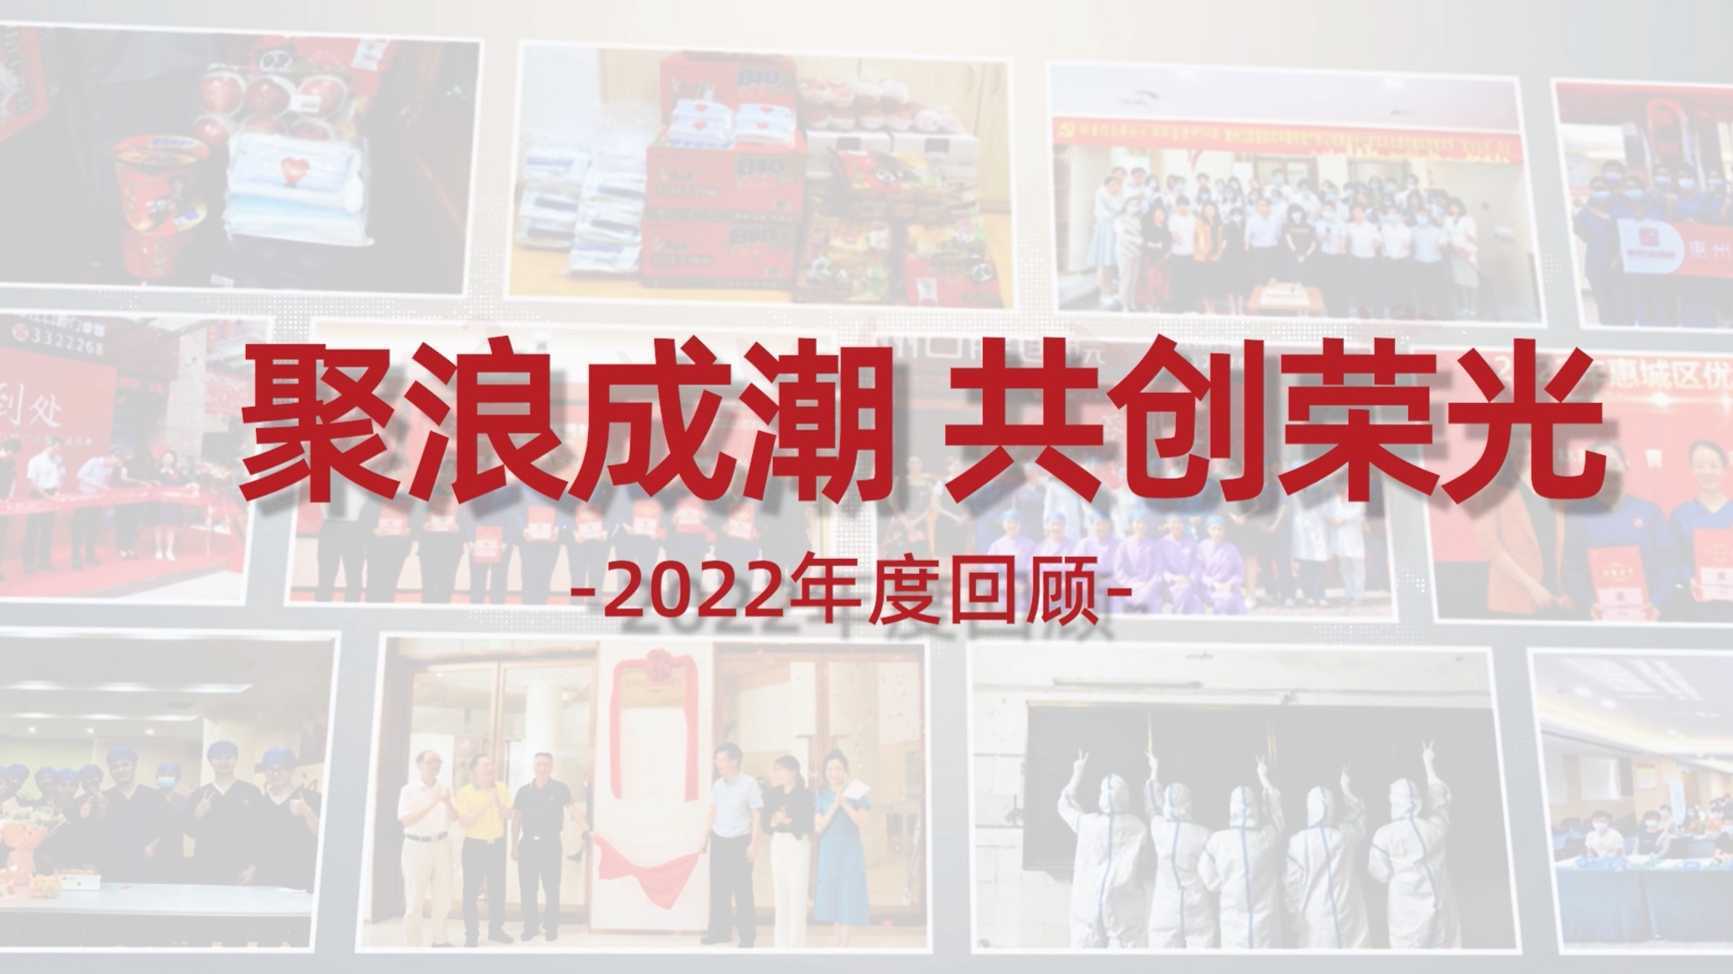 惠州口腔医院2022年度回顾视频